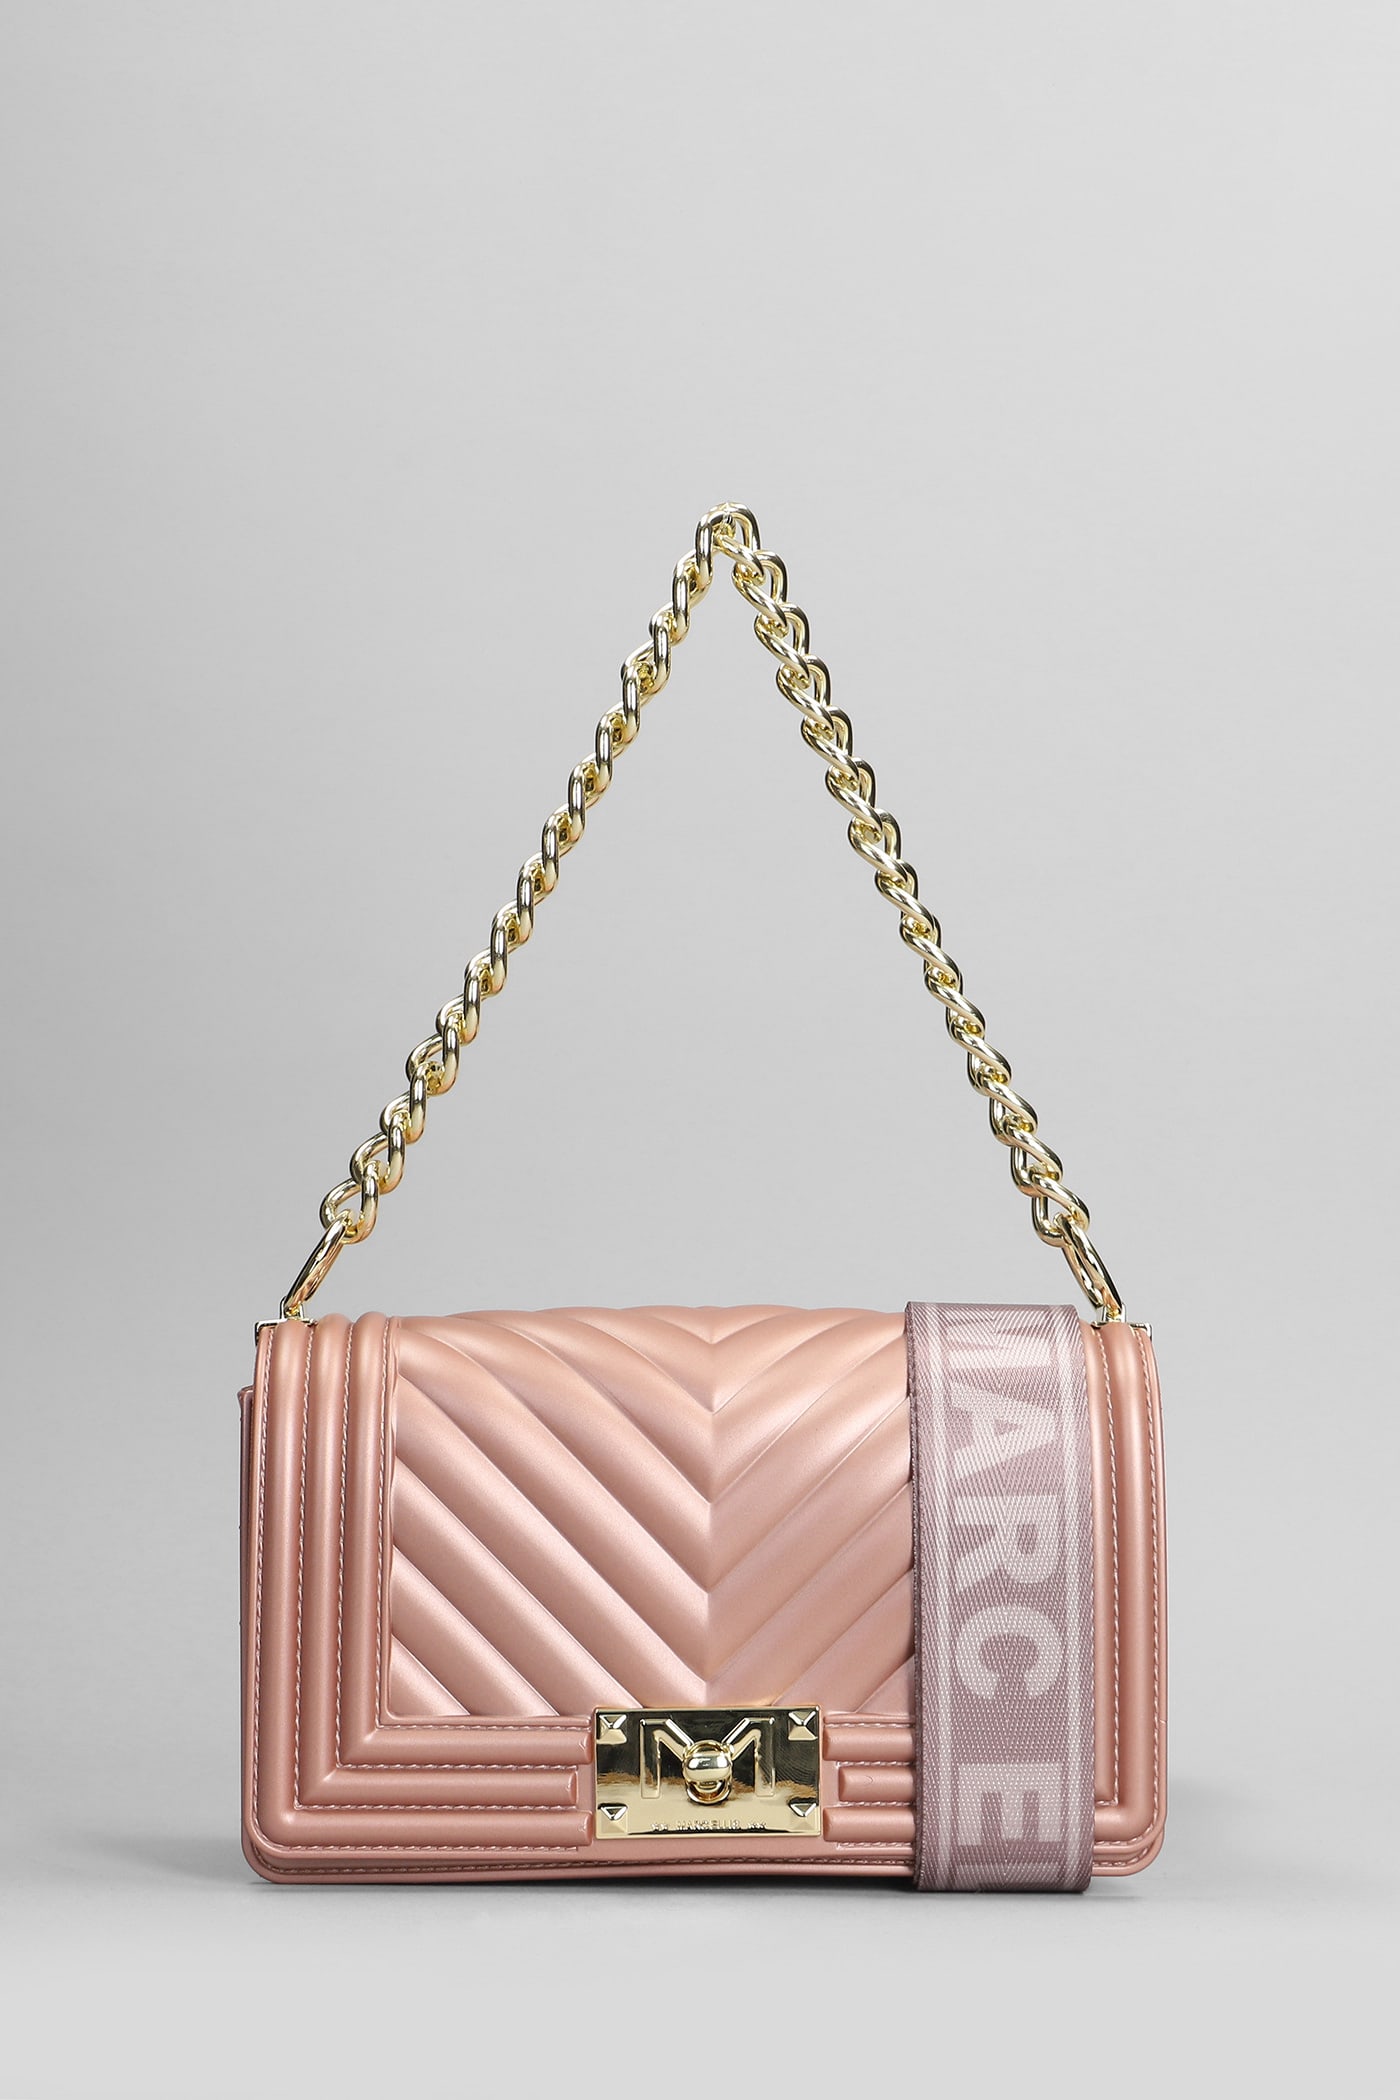 Marc Ellis Flat S Shoulder Bag In Rose-pink Pvc In Gold